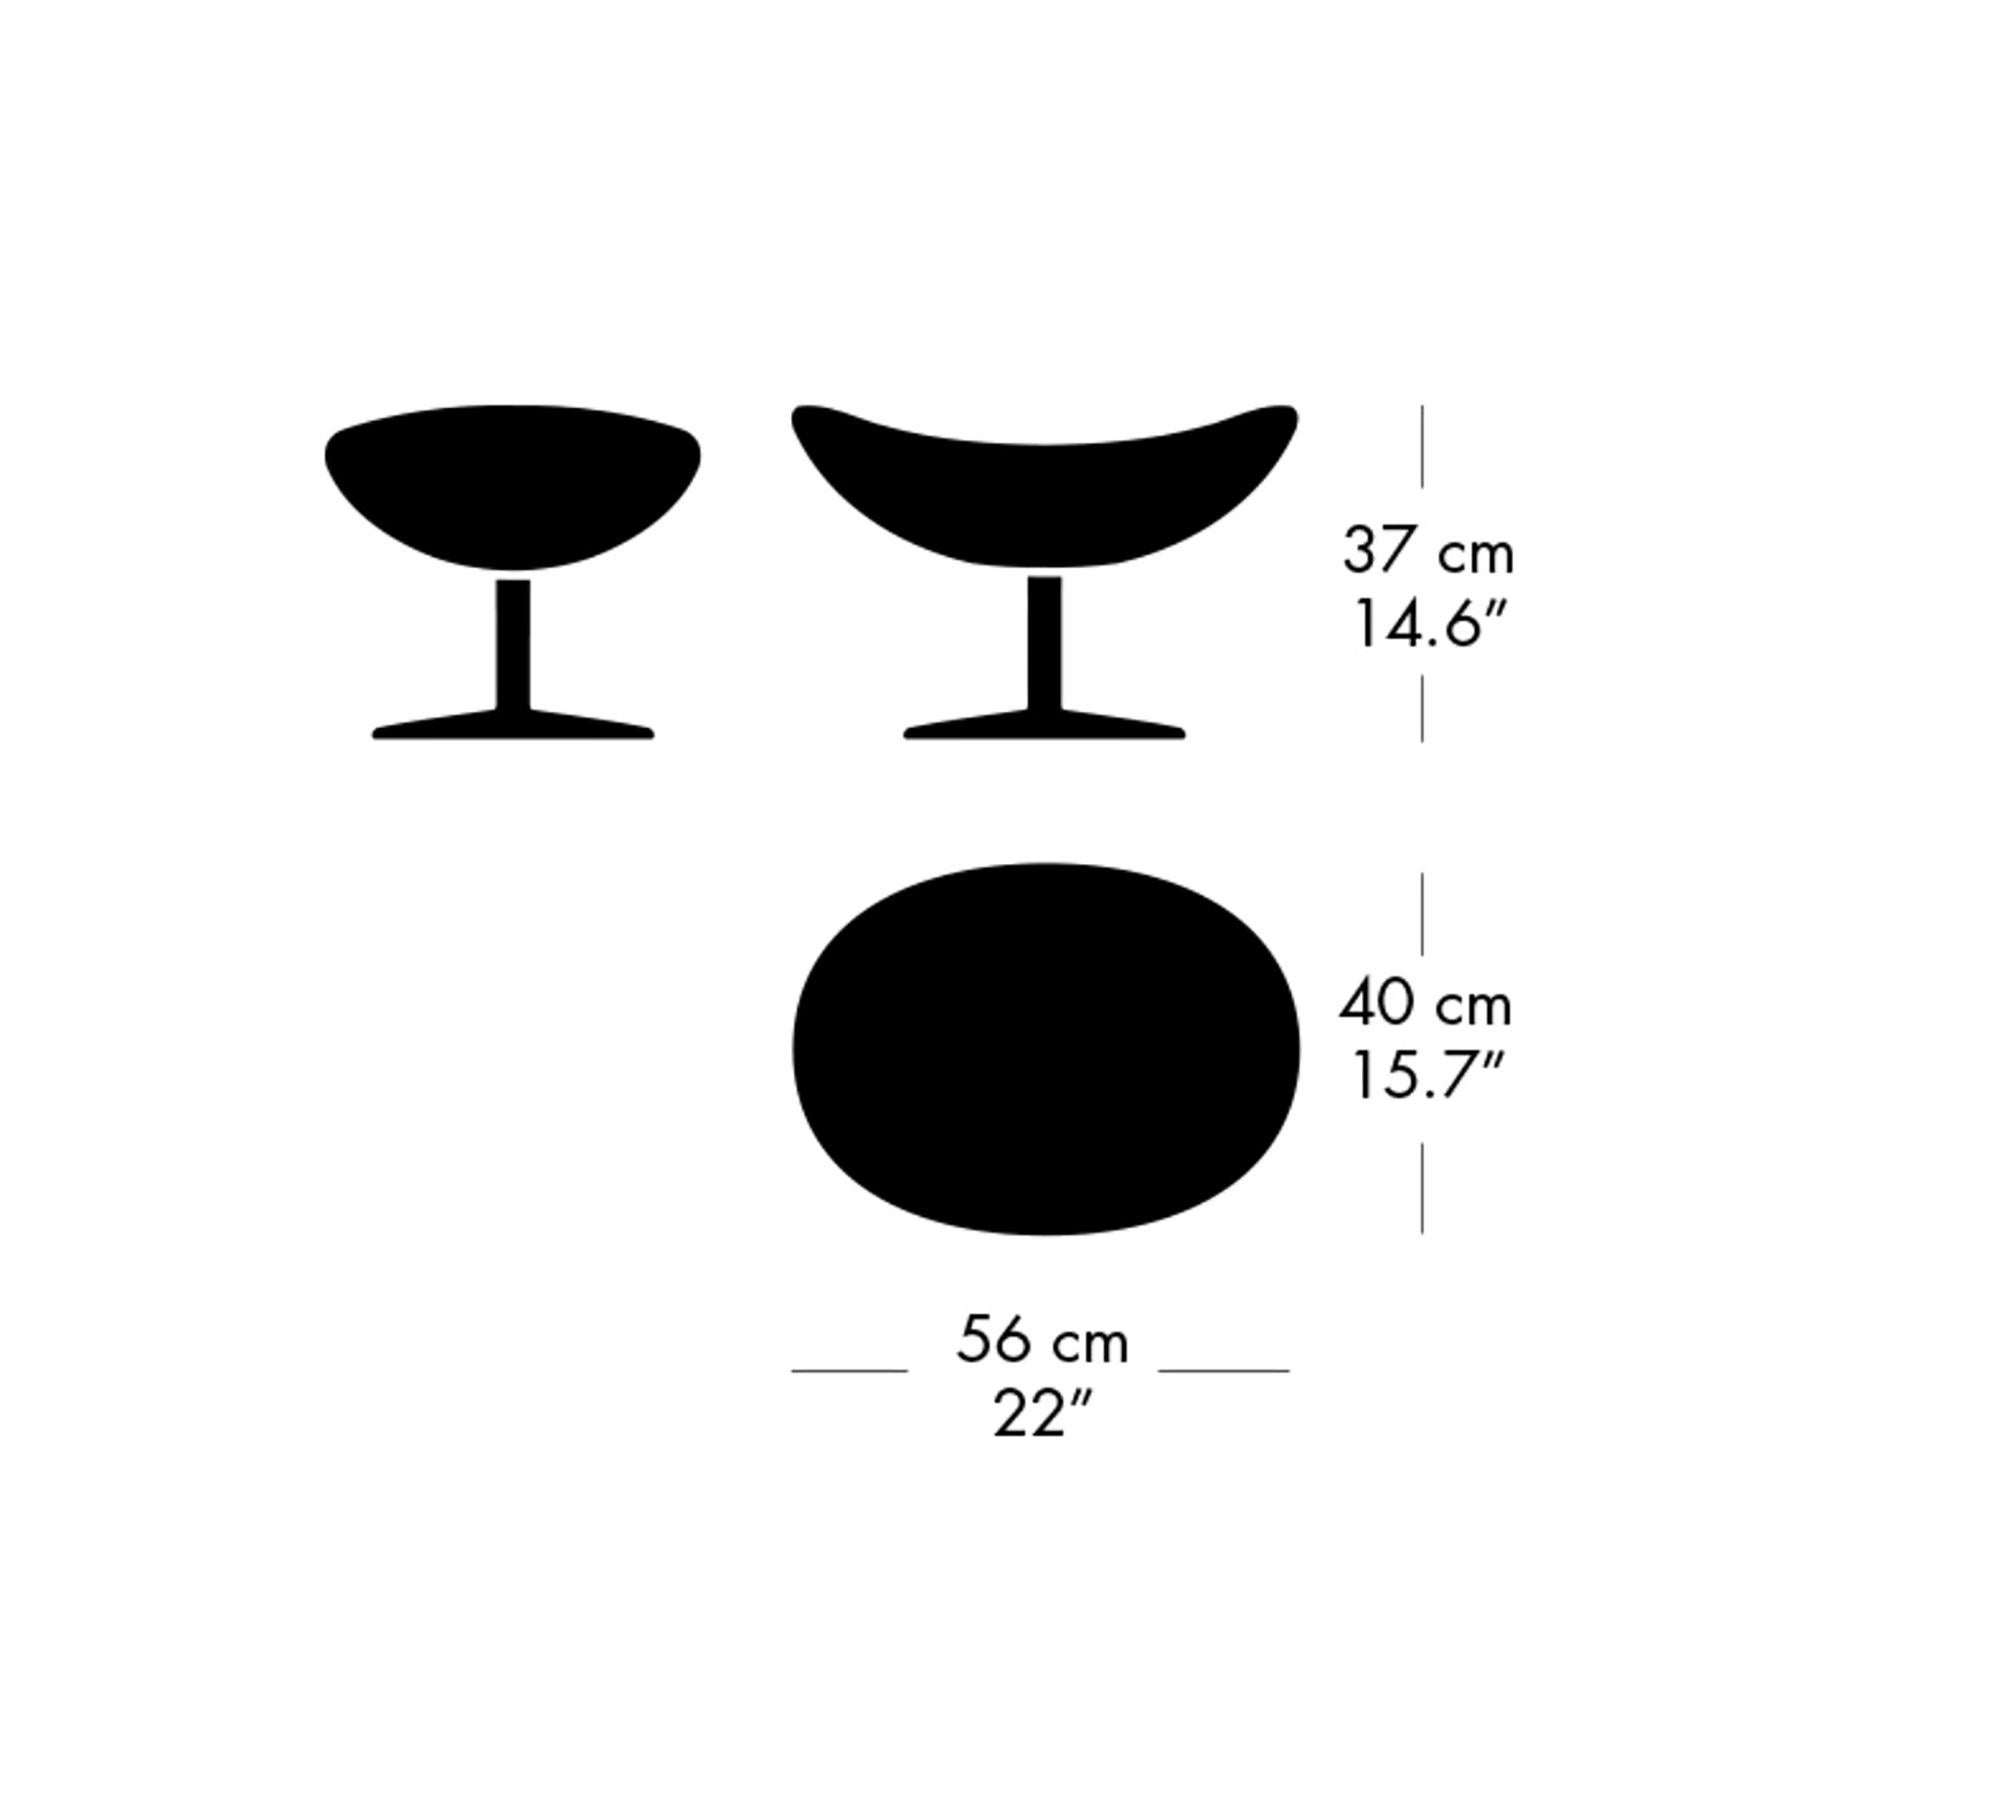 Arne Jacobsen 'Egg' Footstool for Fritz Hansen in Fabric Upholstery (Cat. 2) For Sale 4